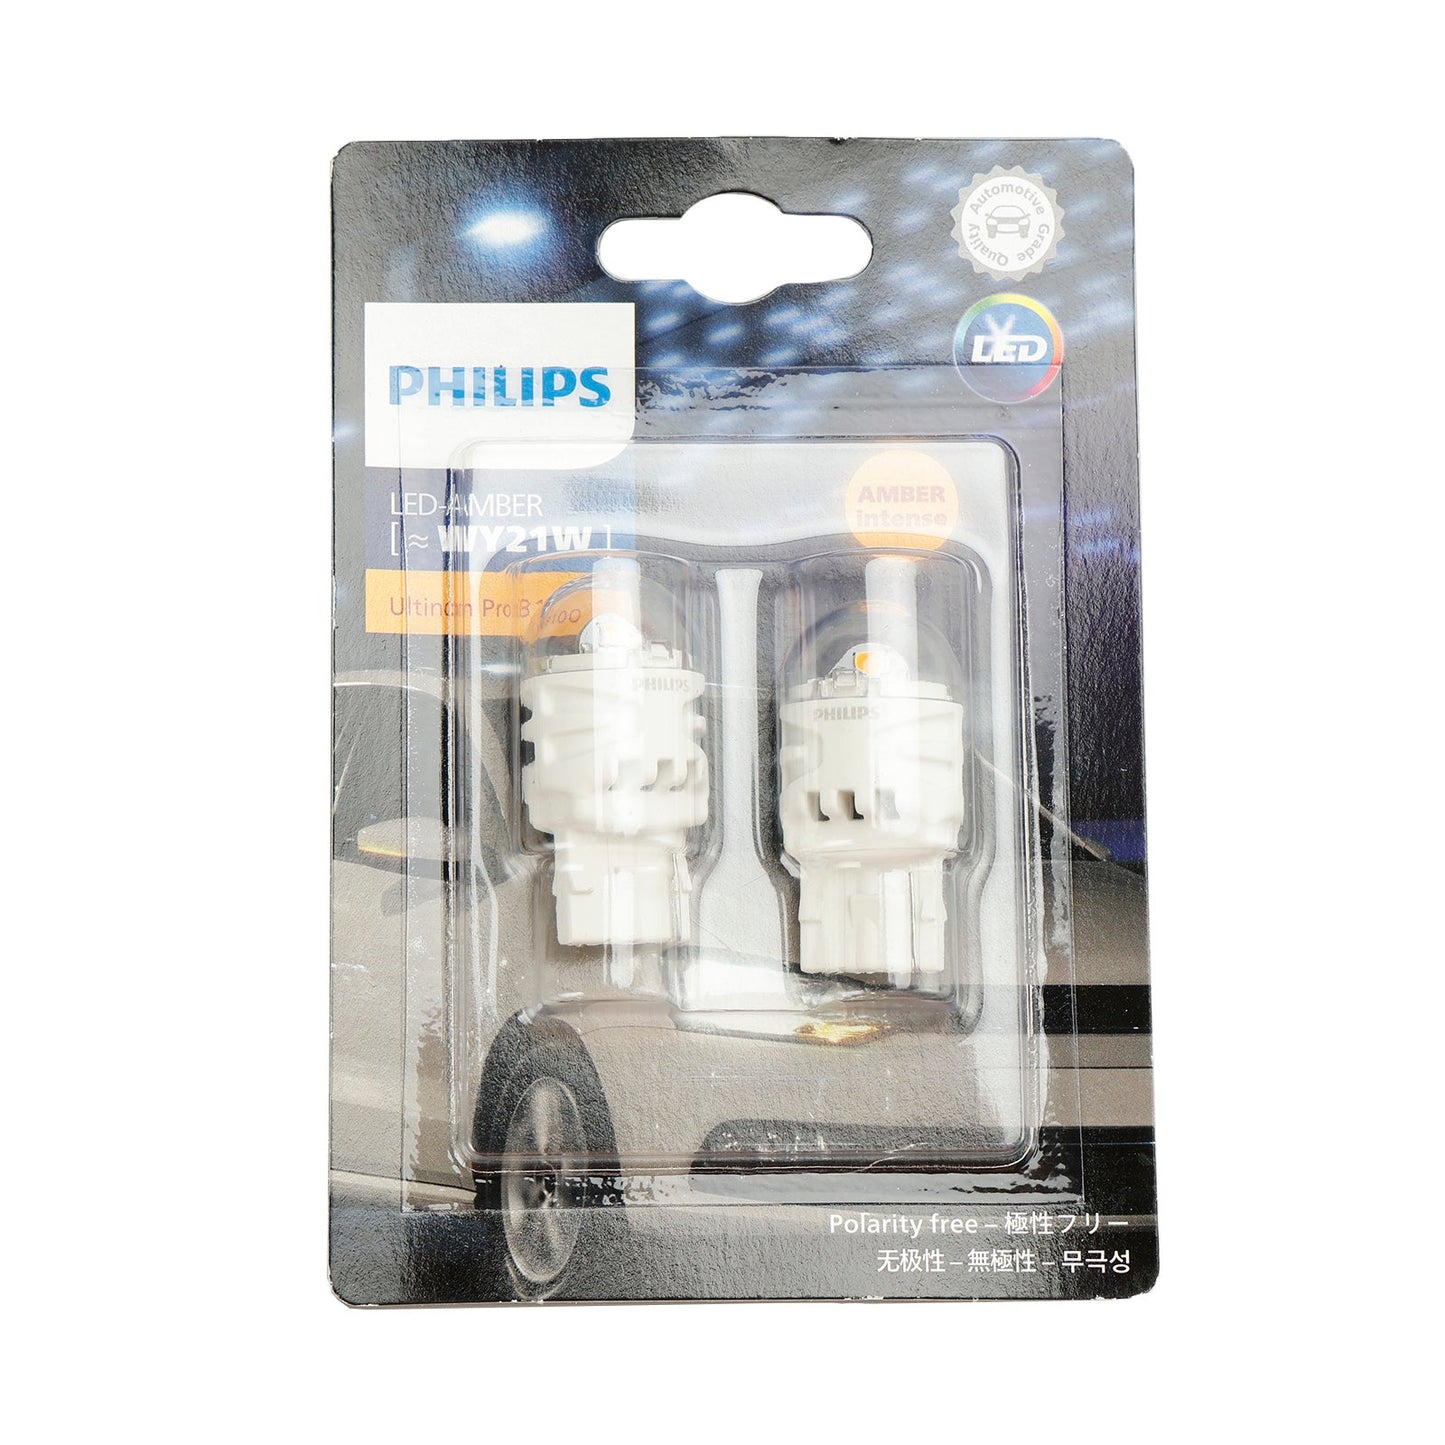 Für Philips 11071AU31B2 Ultinon Pro3100 LED-BERNSTEIN WY21W W3x16d 12V